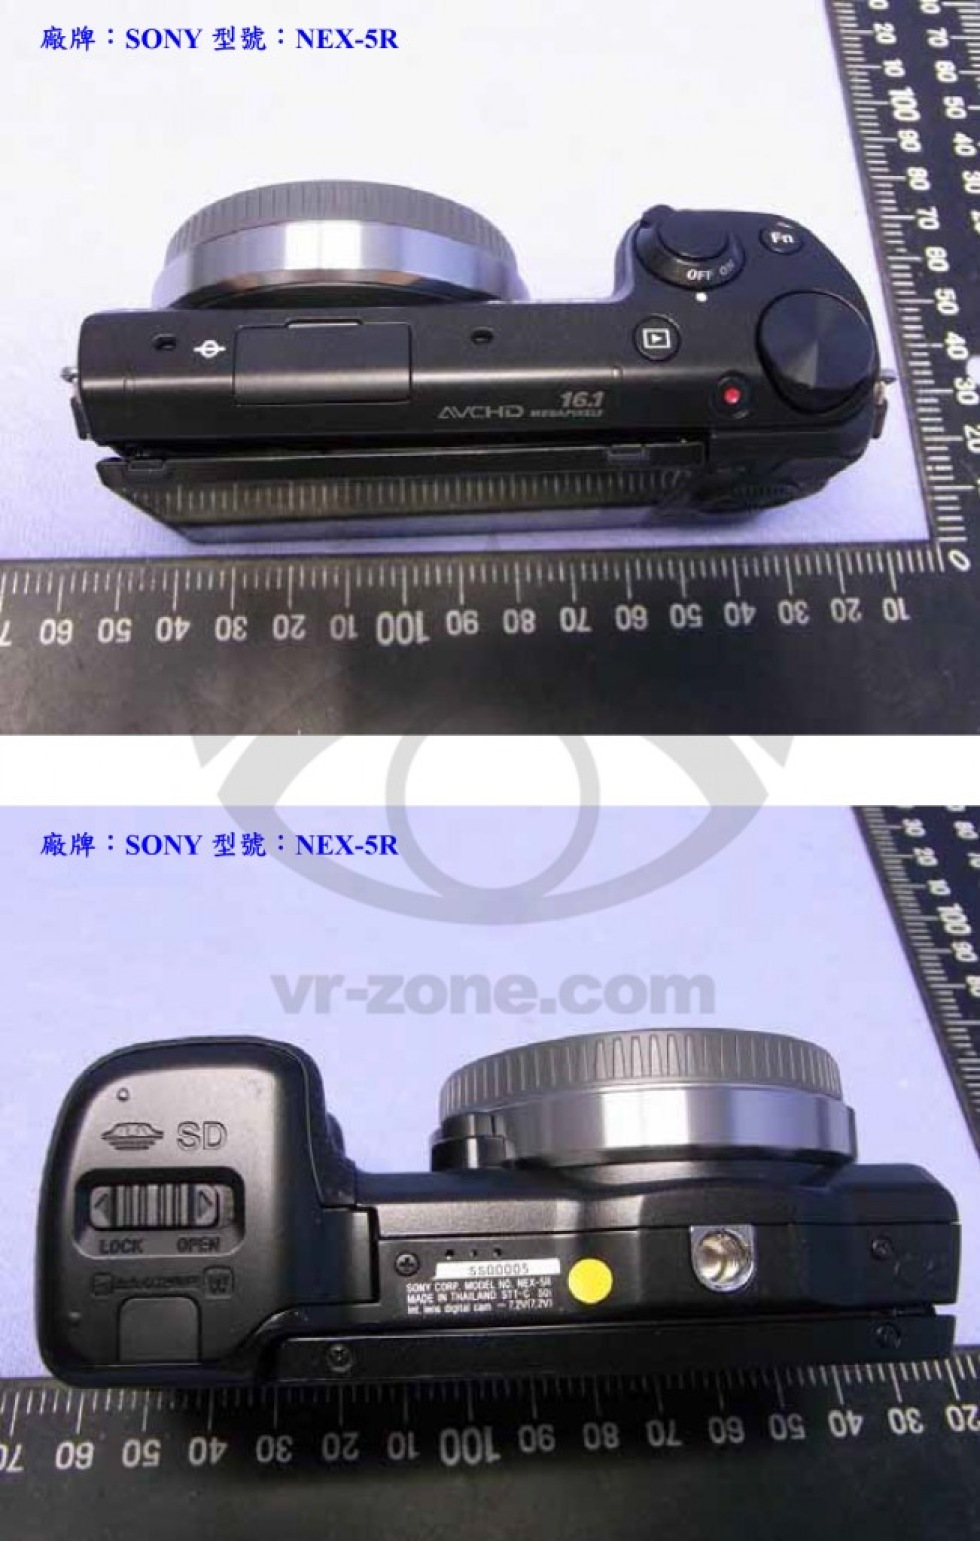 Sony Nex-kamera med fullformatssensor?